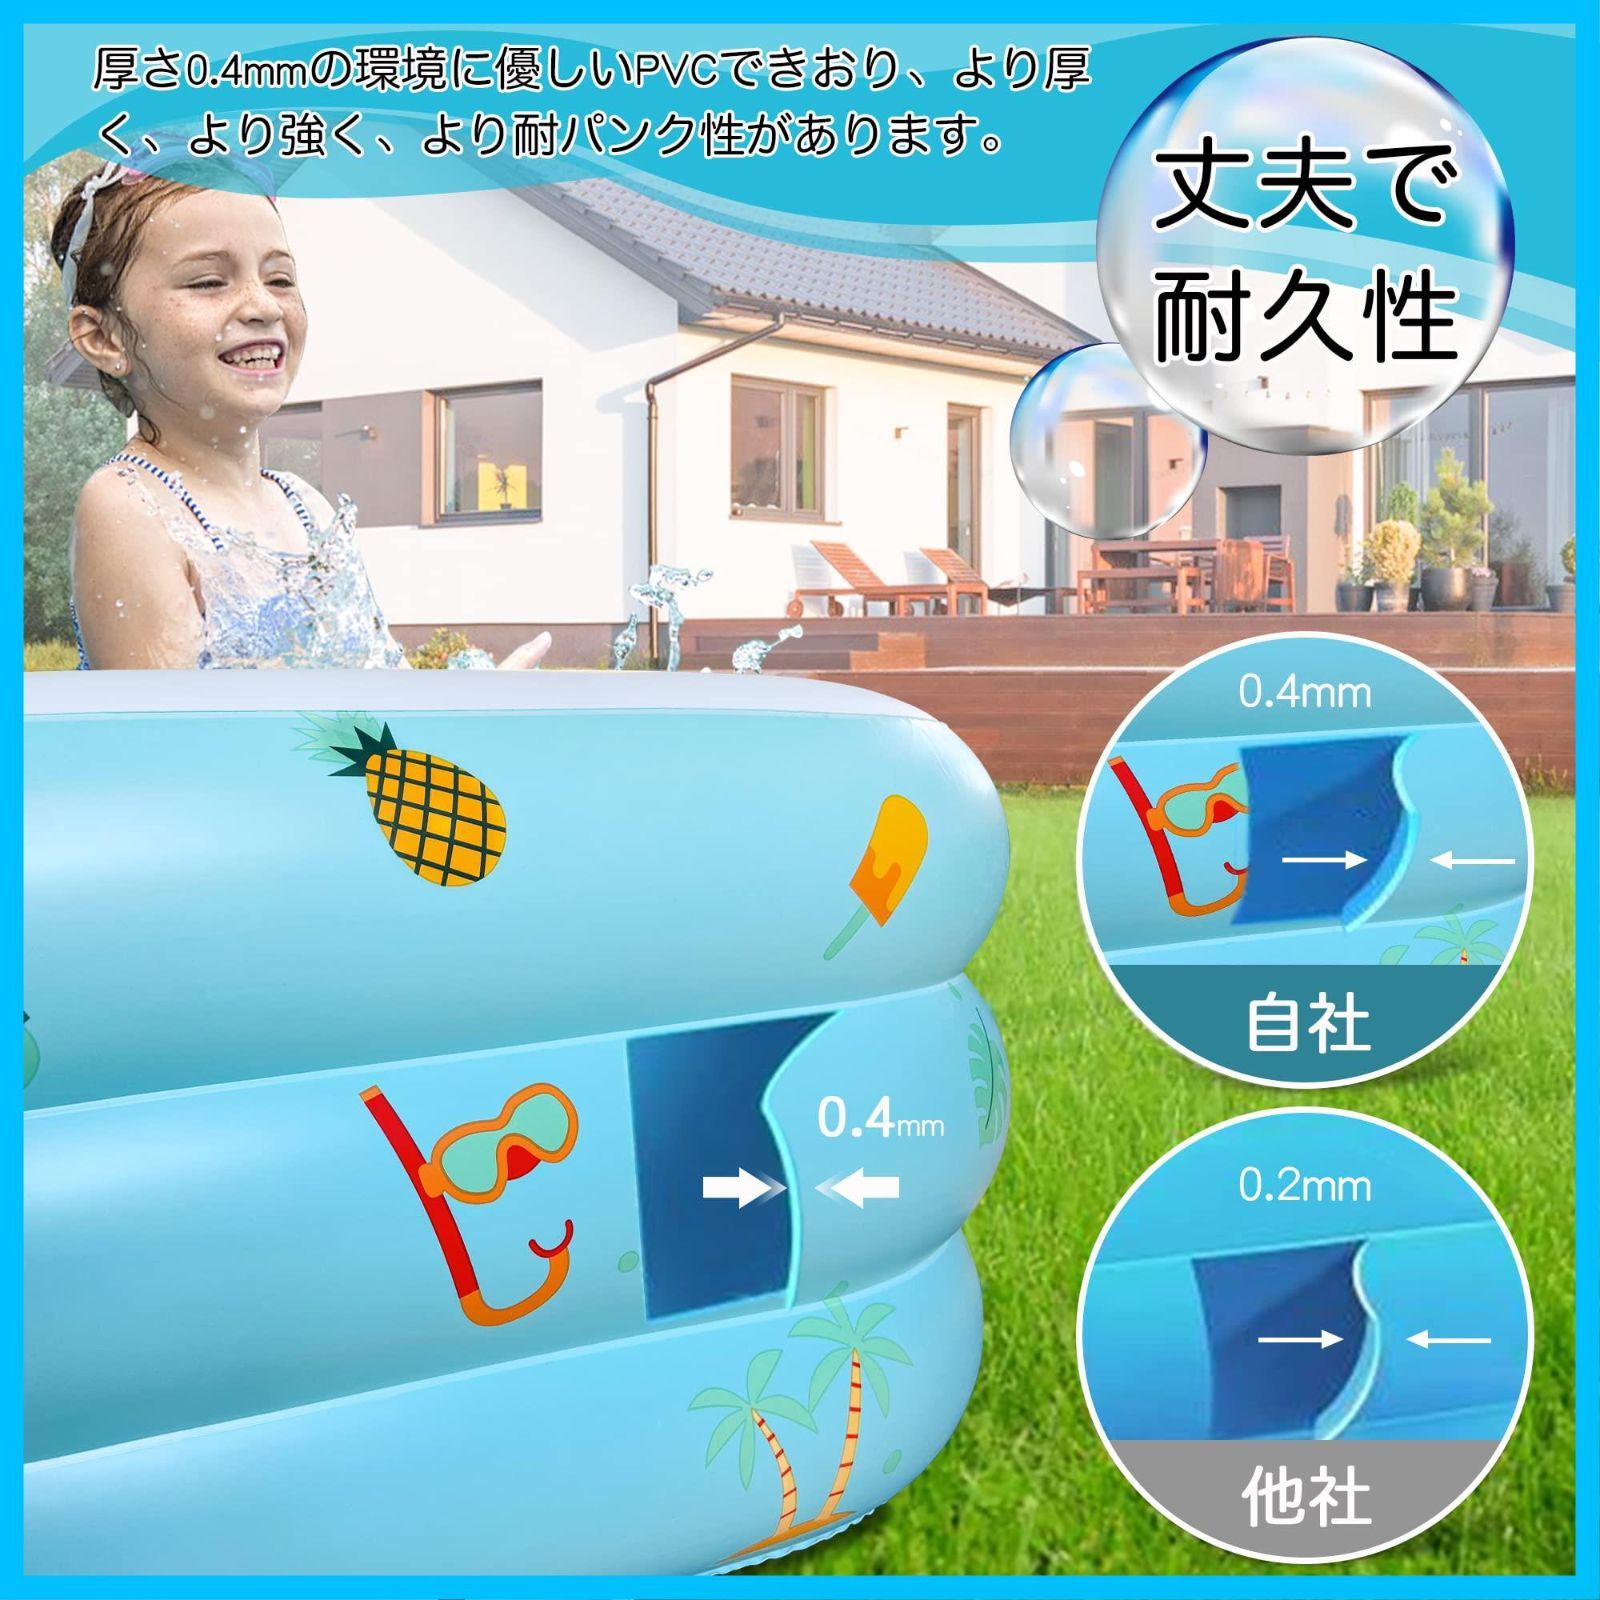 【残りわずか】耐高温 耐摩擦 厚く 水遊び 安全無毒 PVC材質 屋内/屋外用 家庭用 子供用 猛暑対策 3つ気室 ビニールプール 収納便利 ファミリープール 2.6M 日本語説明書付き 大型 プール